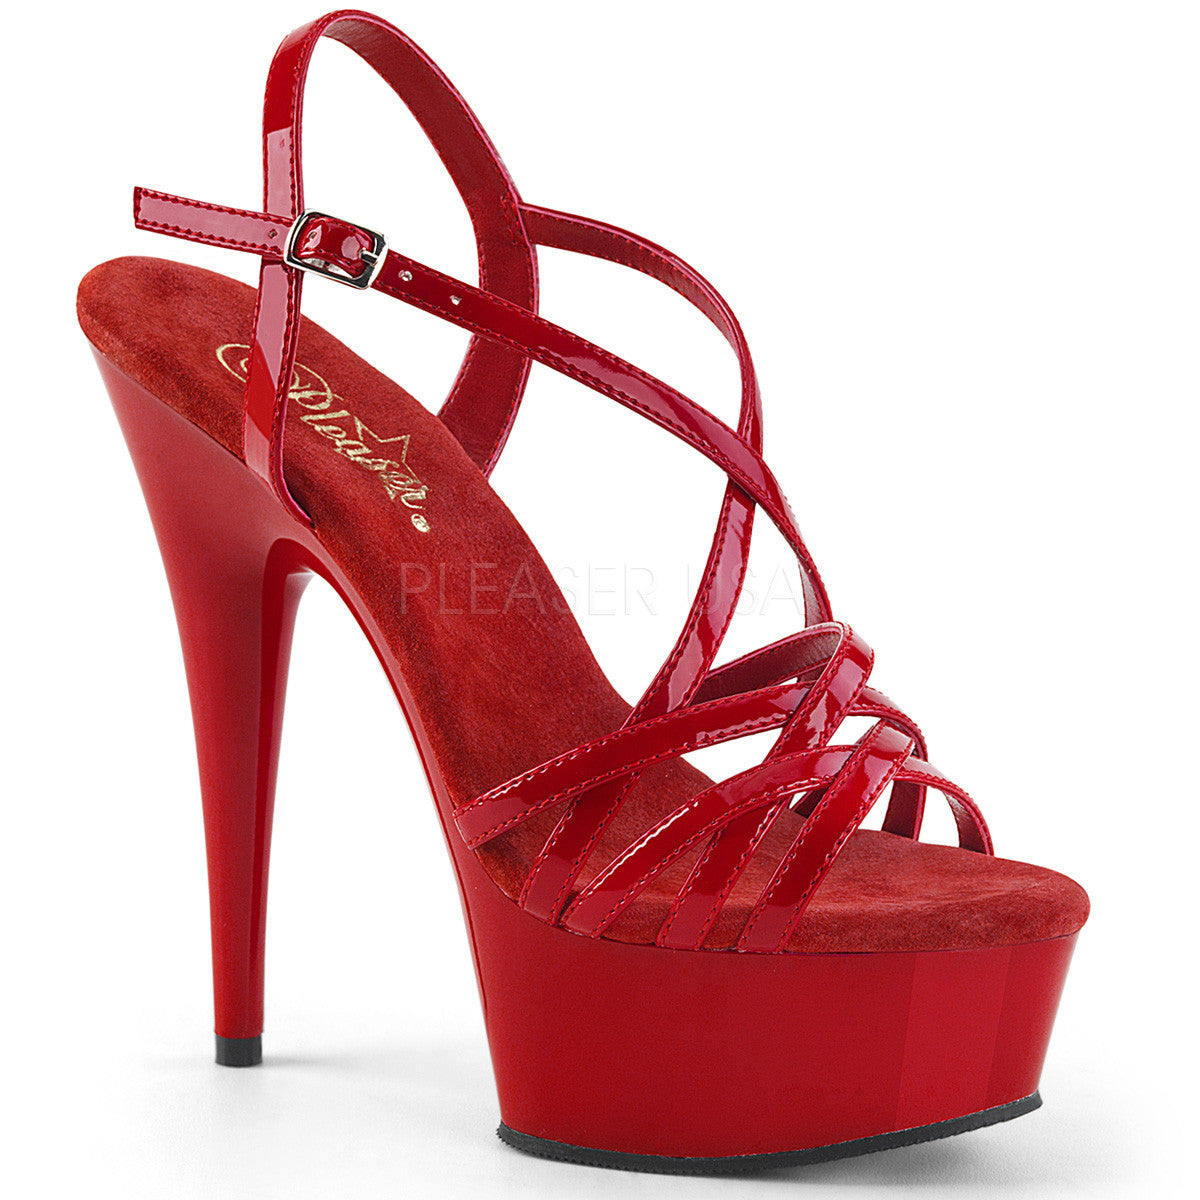 6" Heel DELIGHT-613 Red Exotic Dancing Shoes